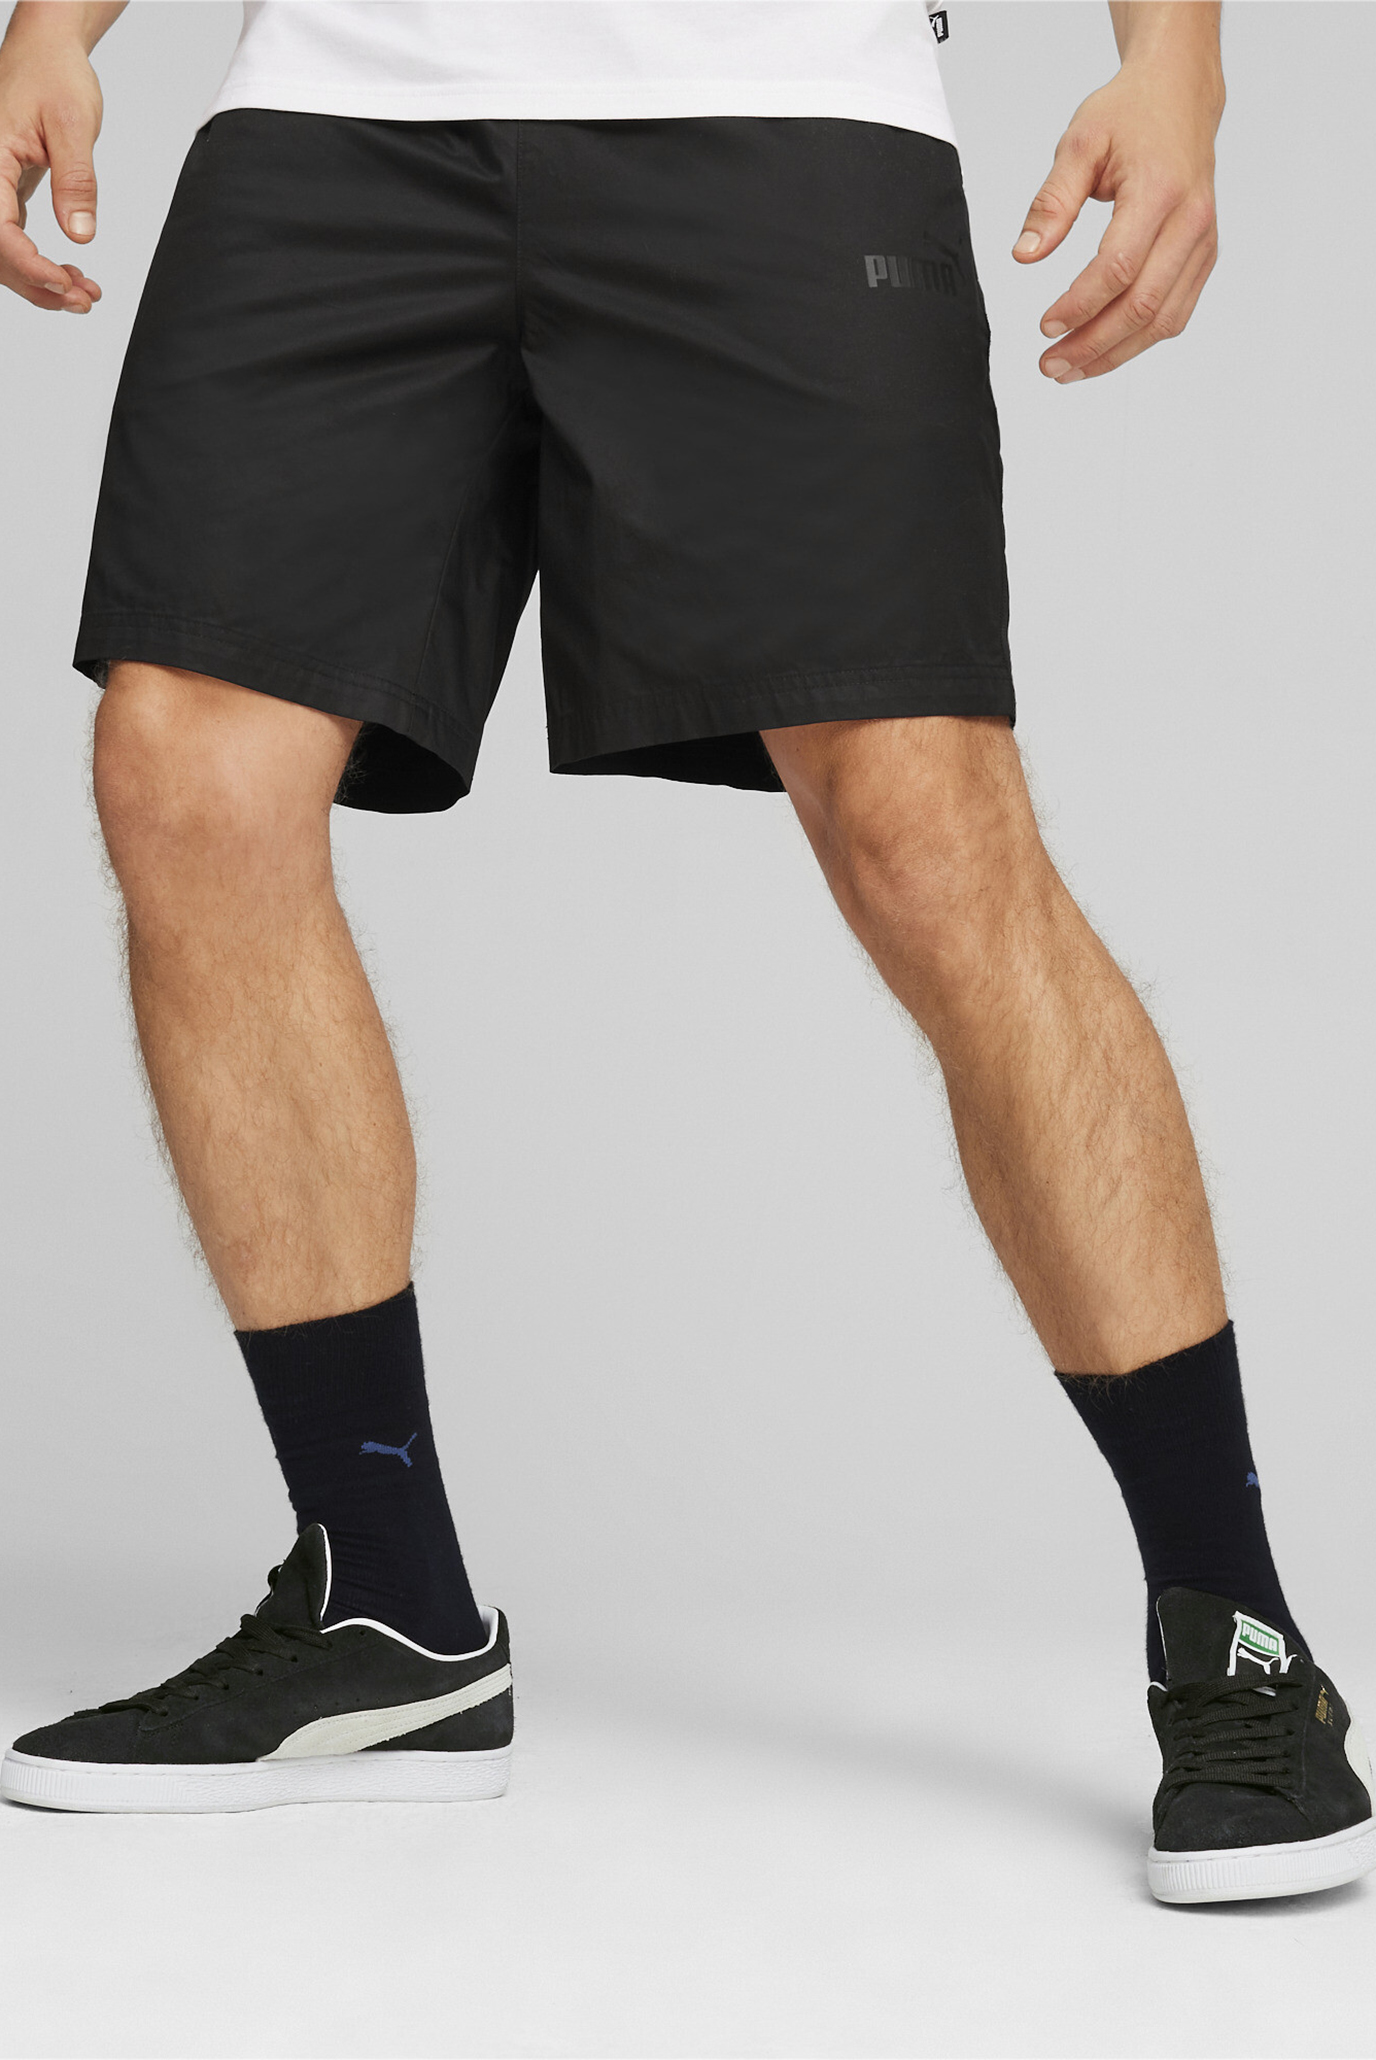 Чоловічі чорні шорти ESS Men's Chino Shorts 1